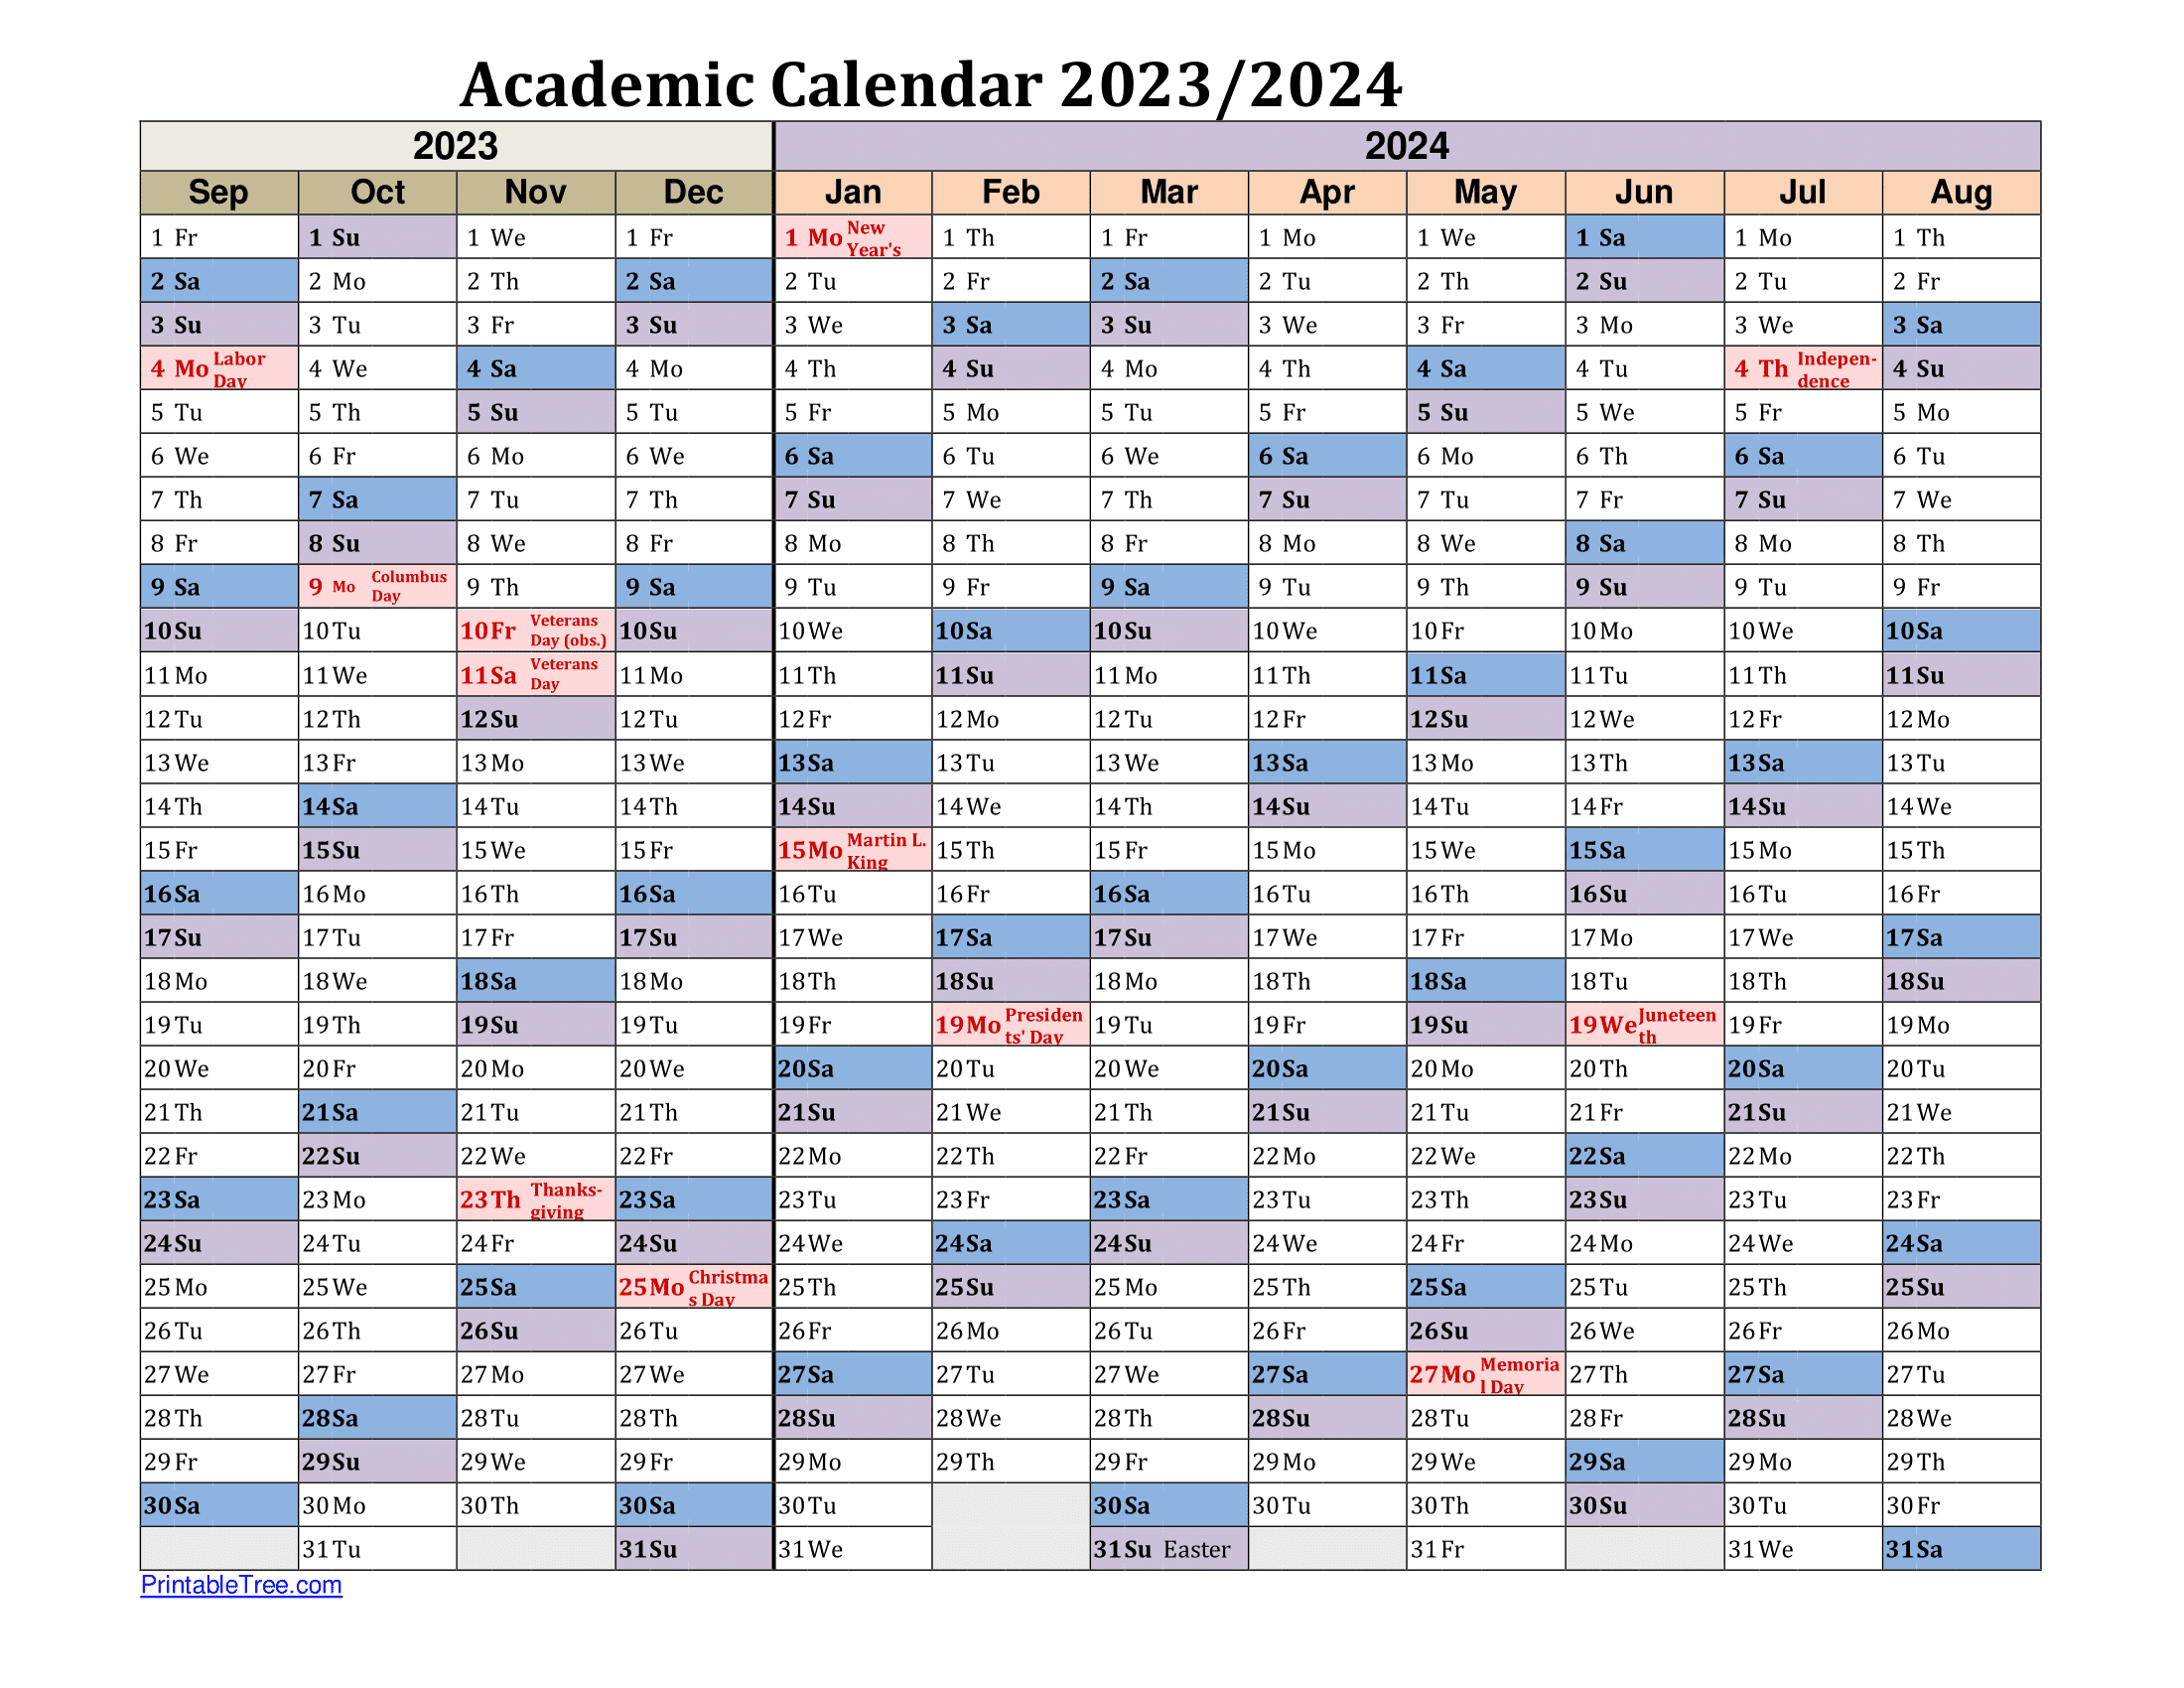 cornell-2024-2025-academic-calendar-jan-2024-calendar